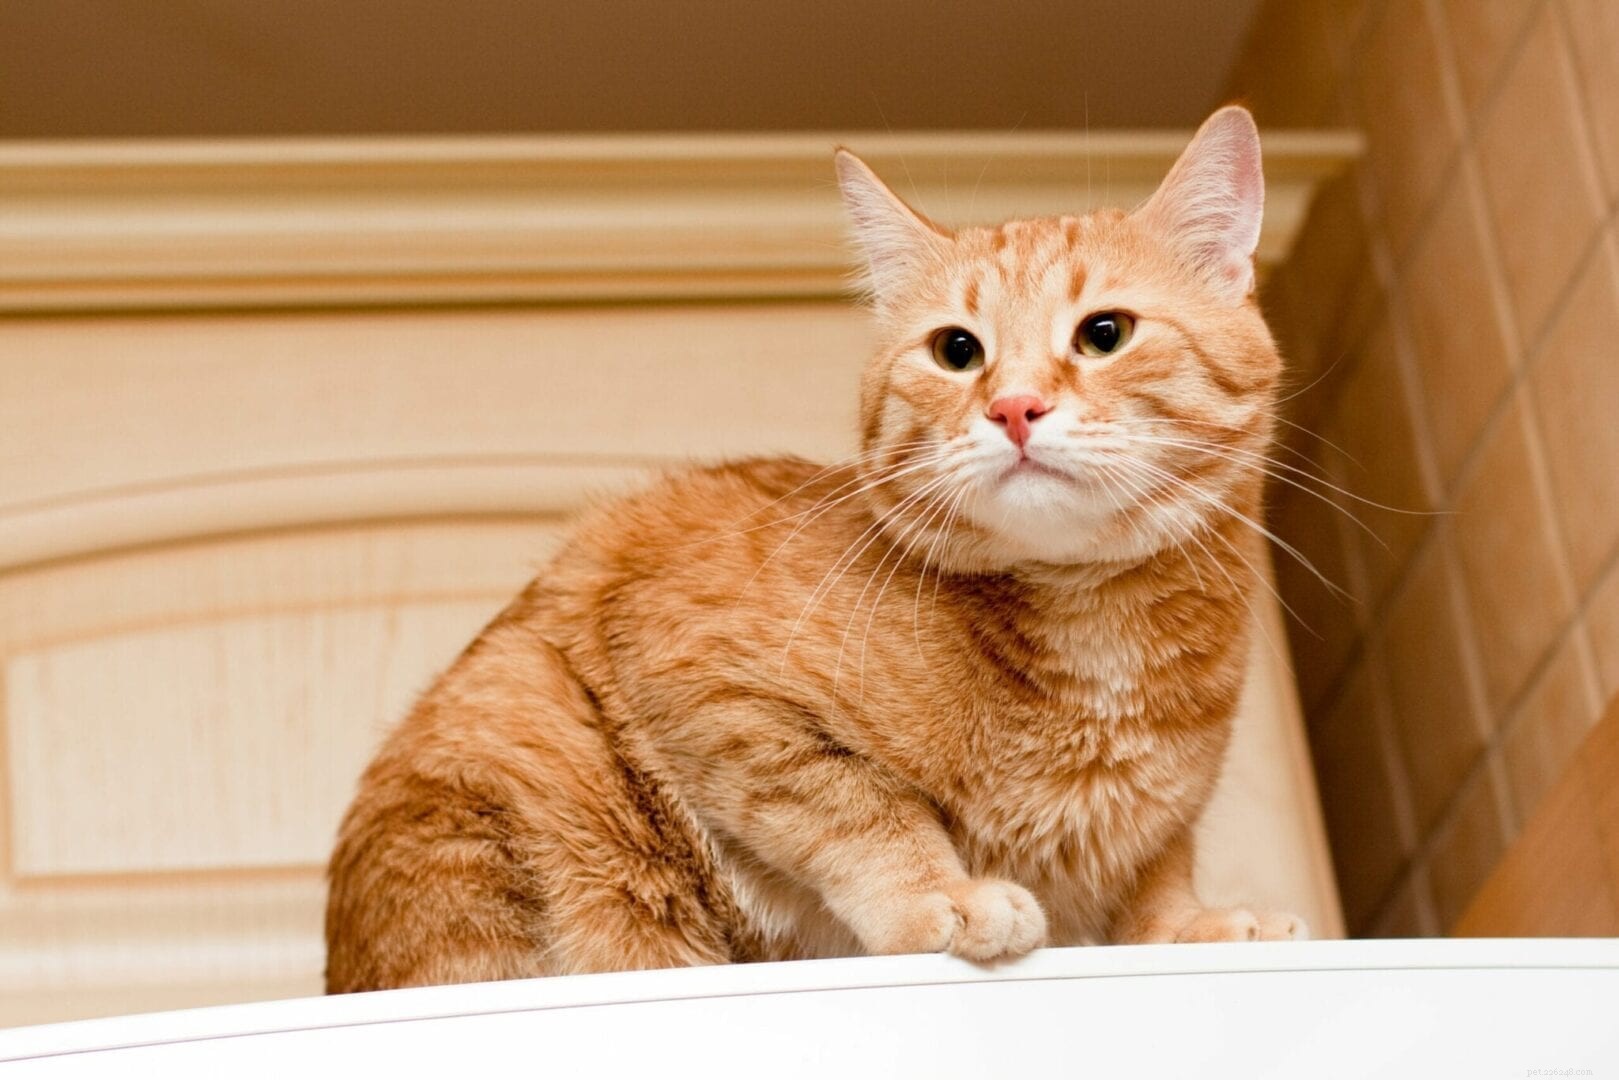 Varför gillar katter att sitta ovanpå kylskåpet?